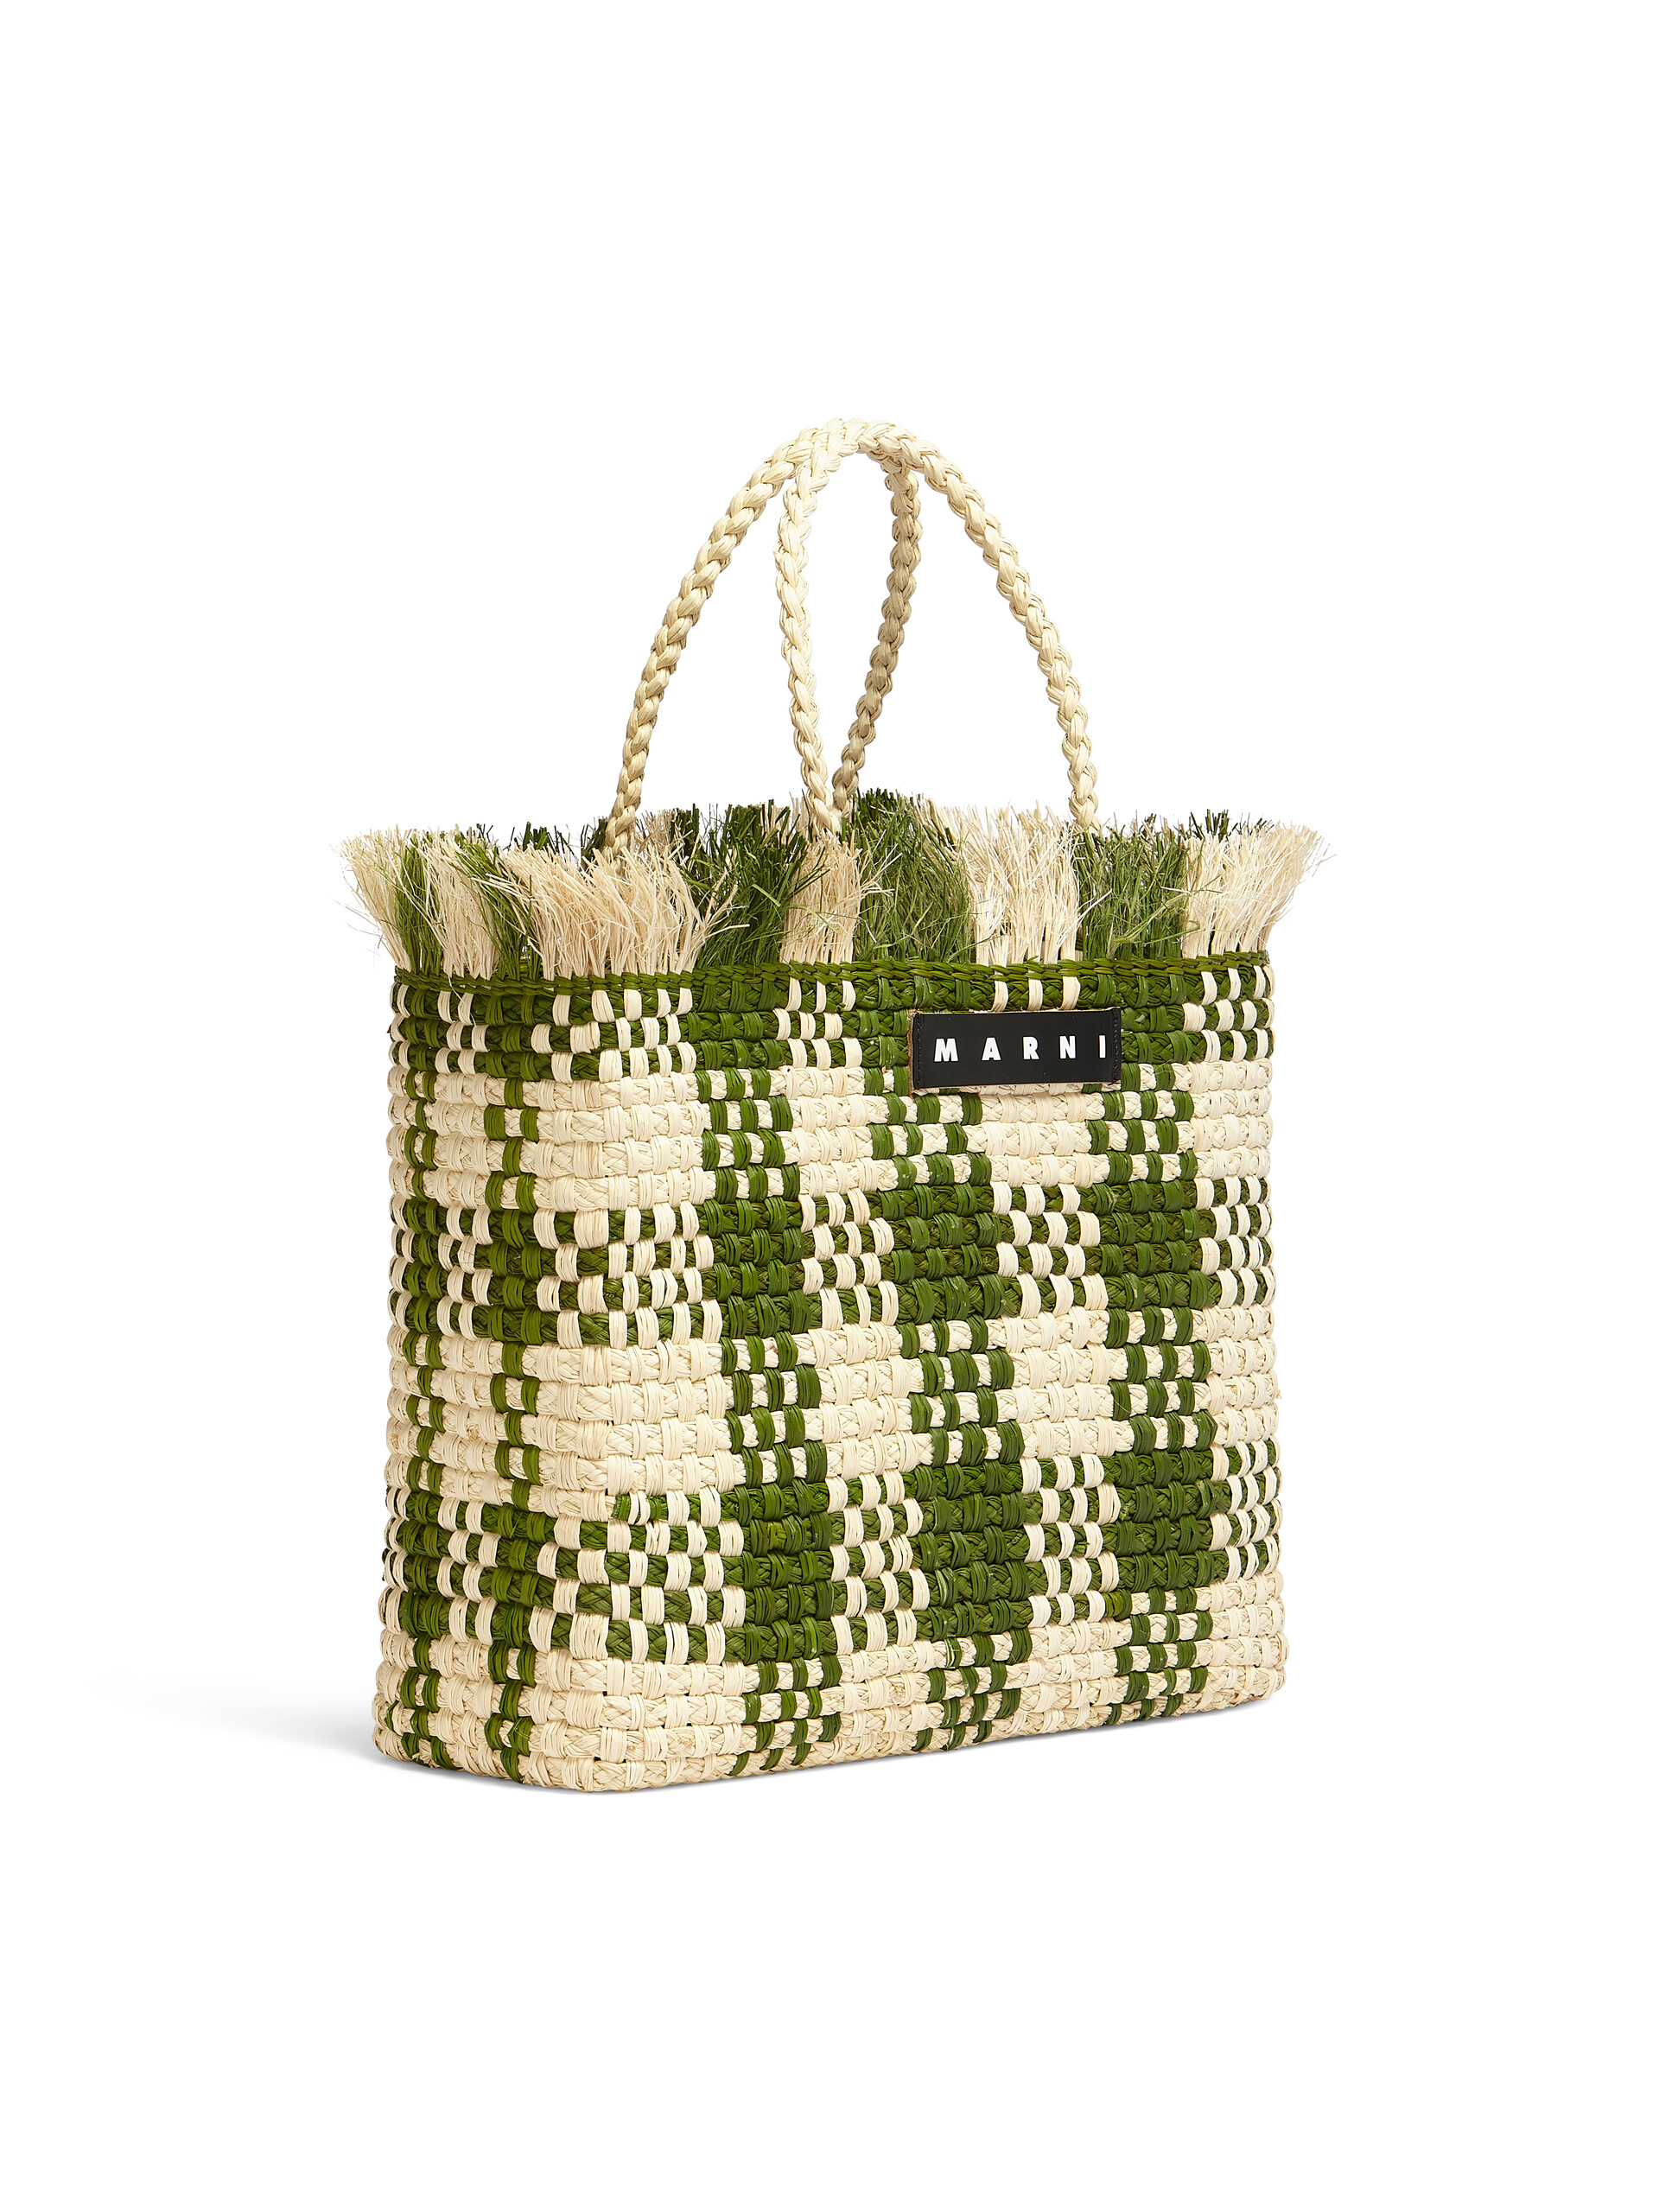 MARNI MARKET medium bag in green natural fiber - Bags - Image 2